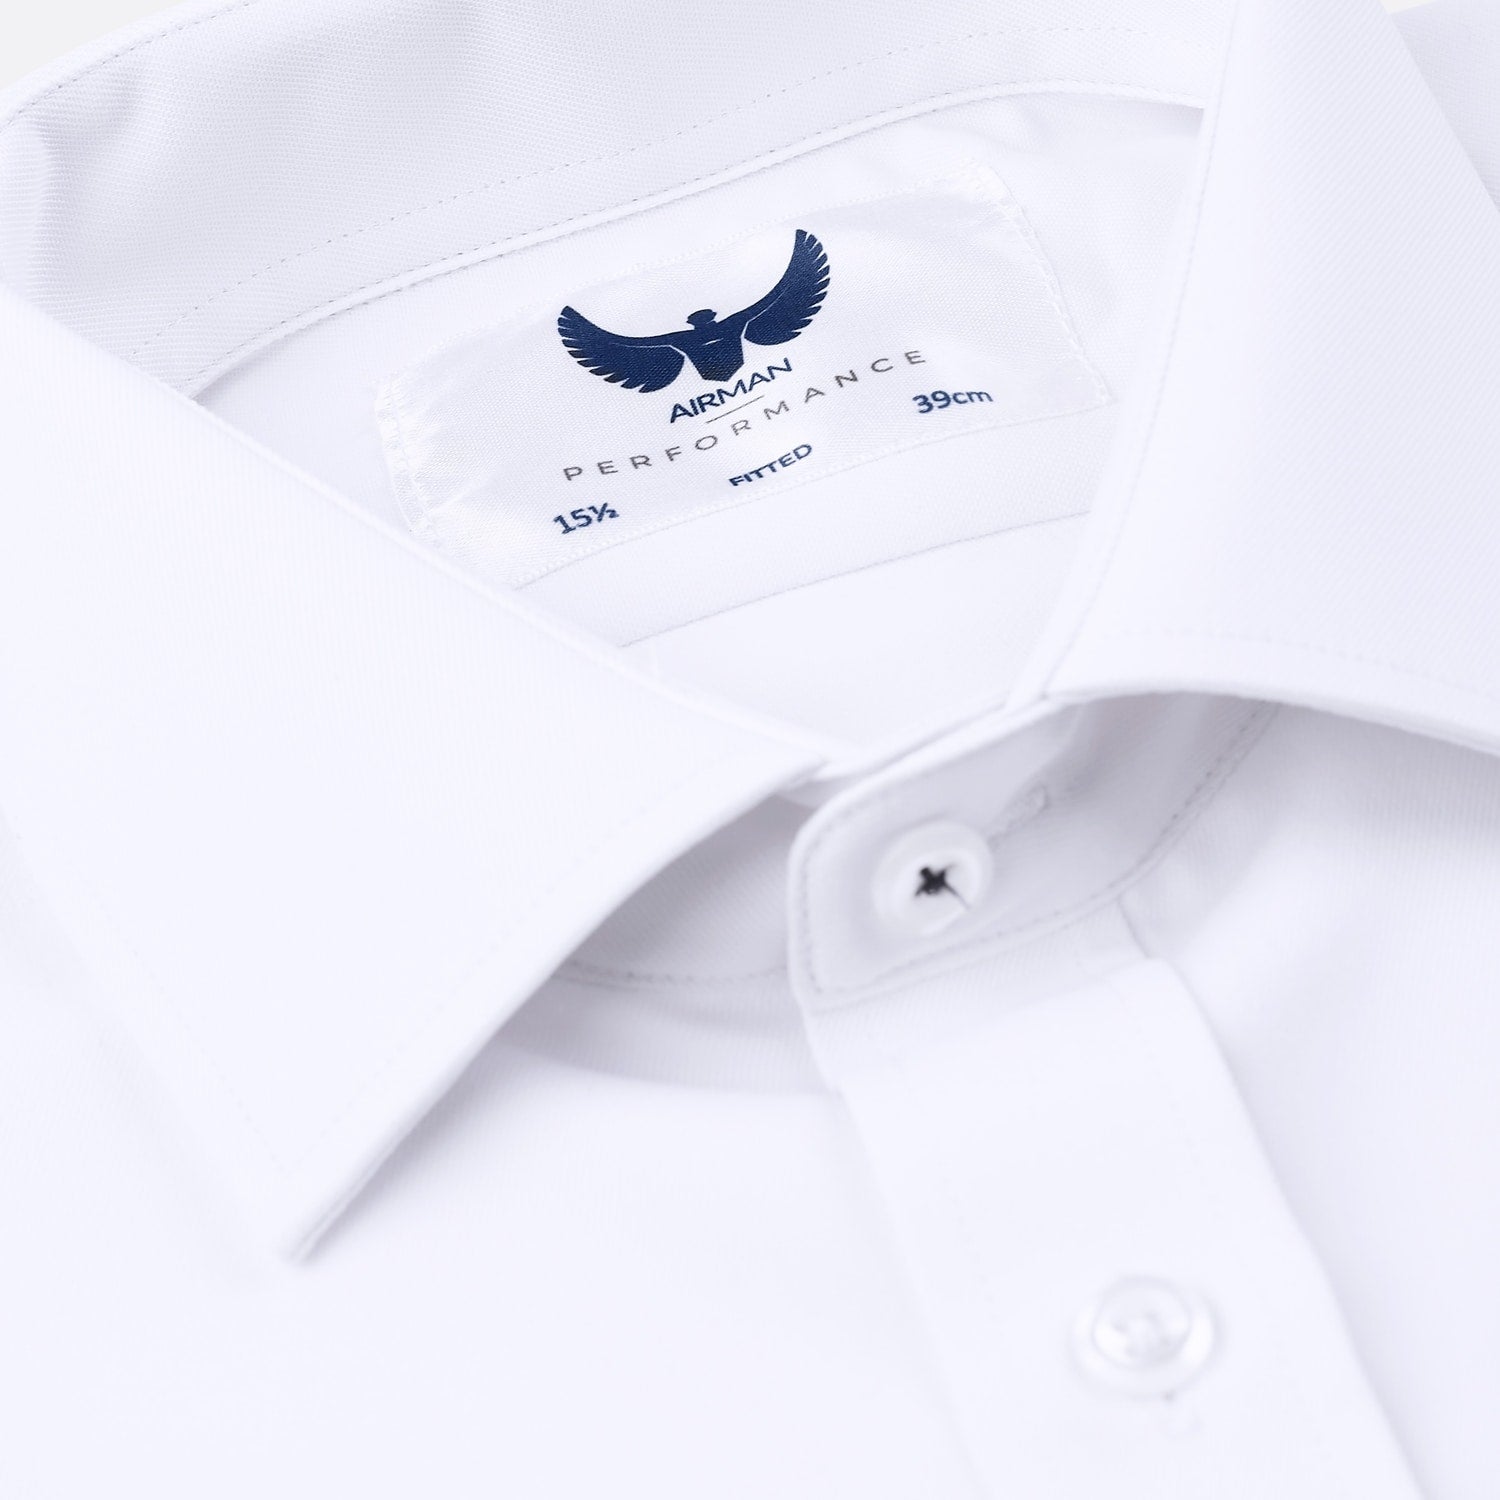 Pilot shirt button and collar